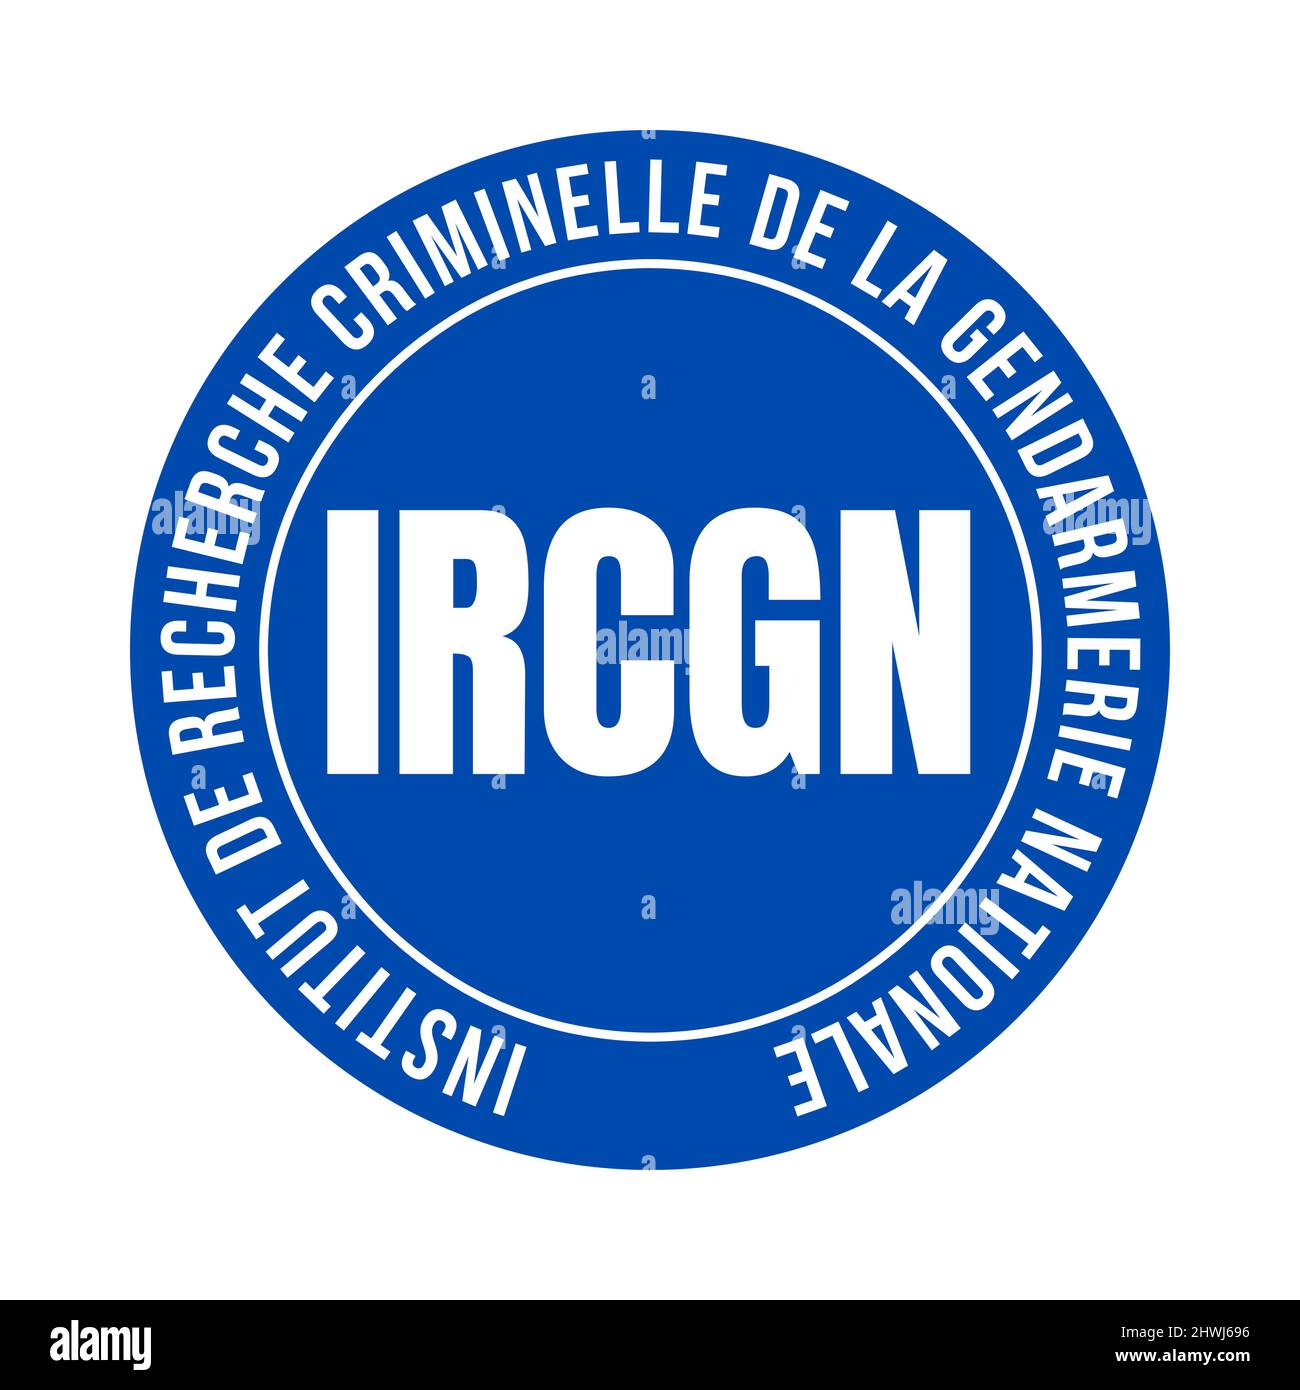 Département de médecine légale du symbole de la gendarmerie nationale française appelé IRCGN institut de recherche criminelle de la gendarmerie nationale en fre Banque D'Images